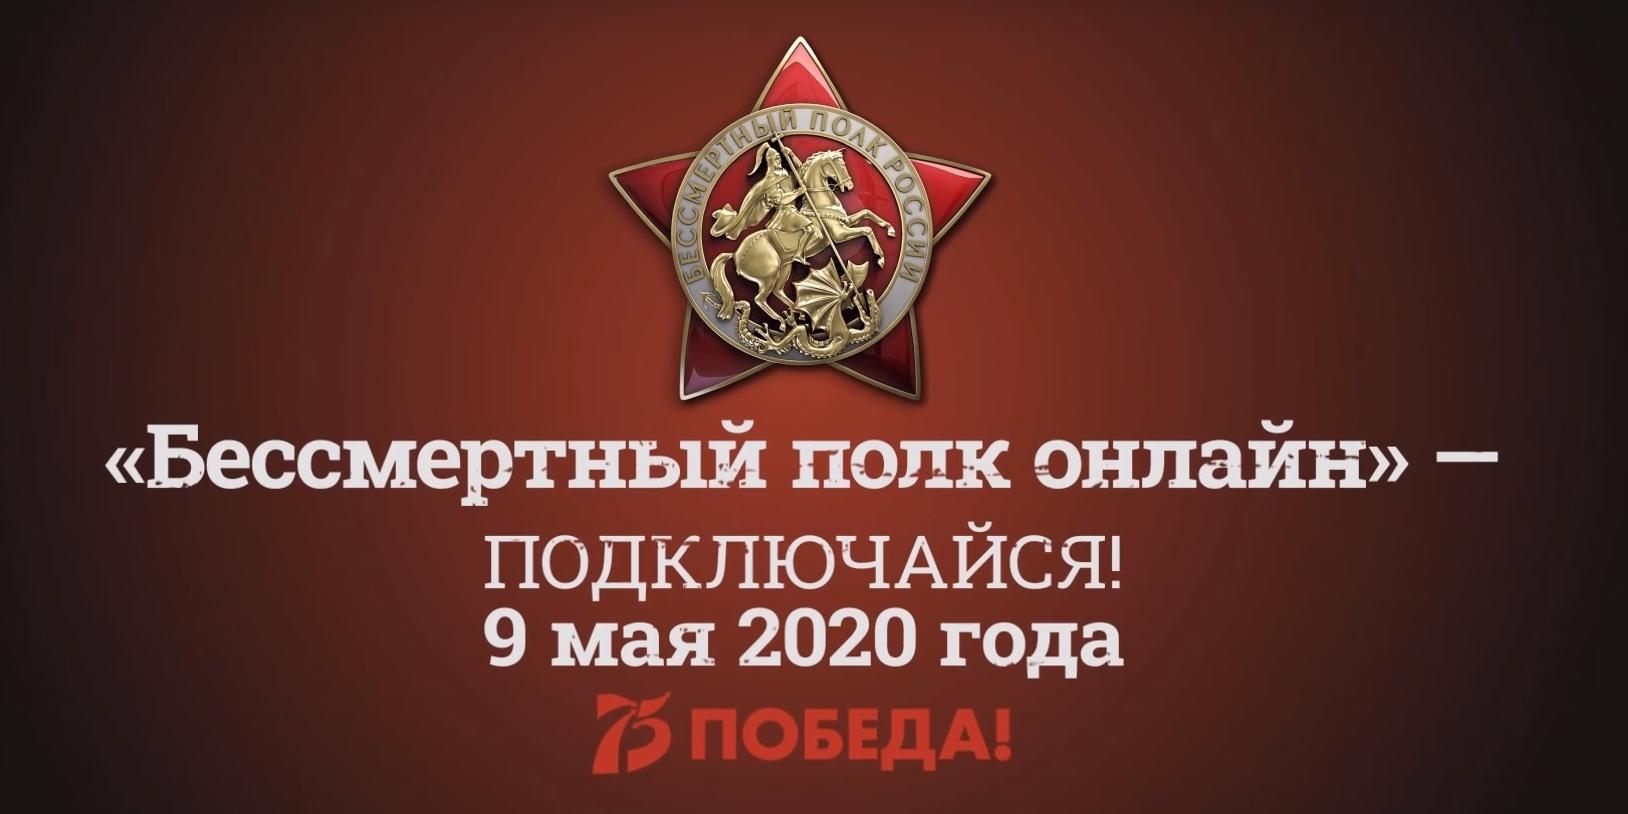 Около 2 млн человек зарегистрировались на всероссийскую акцию "Бессмертный полк - онлайн"